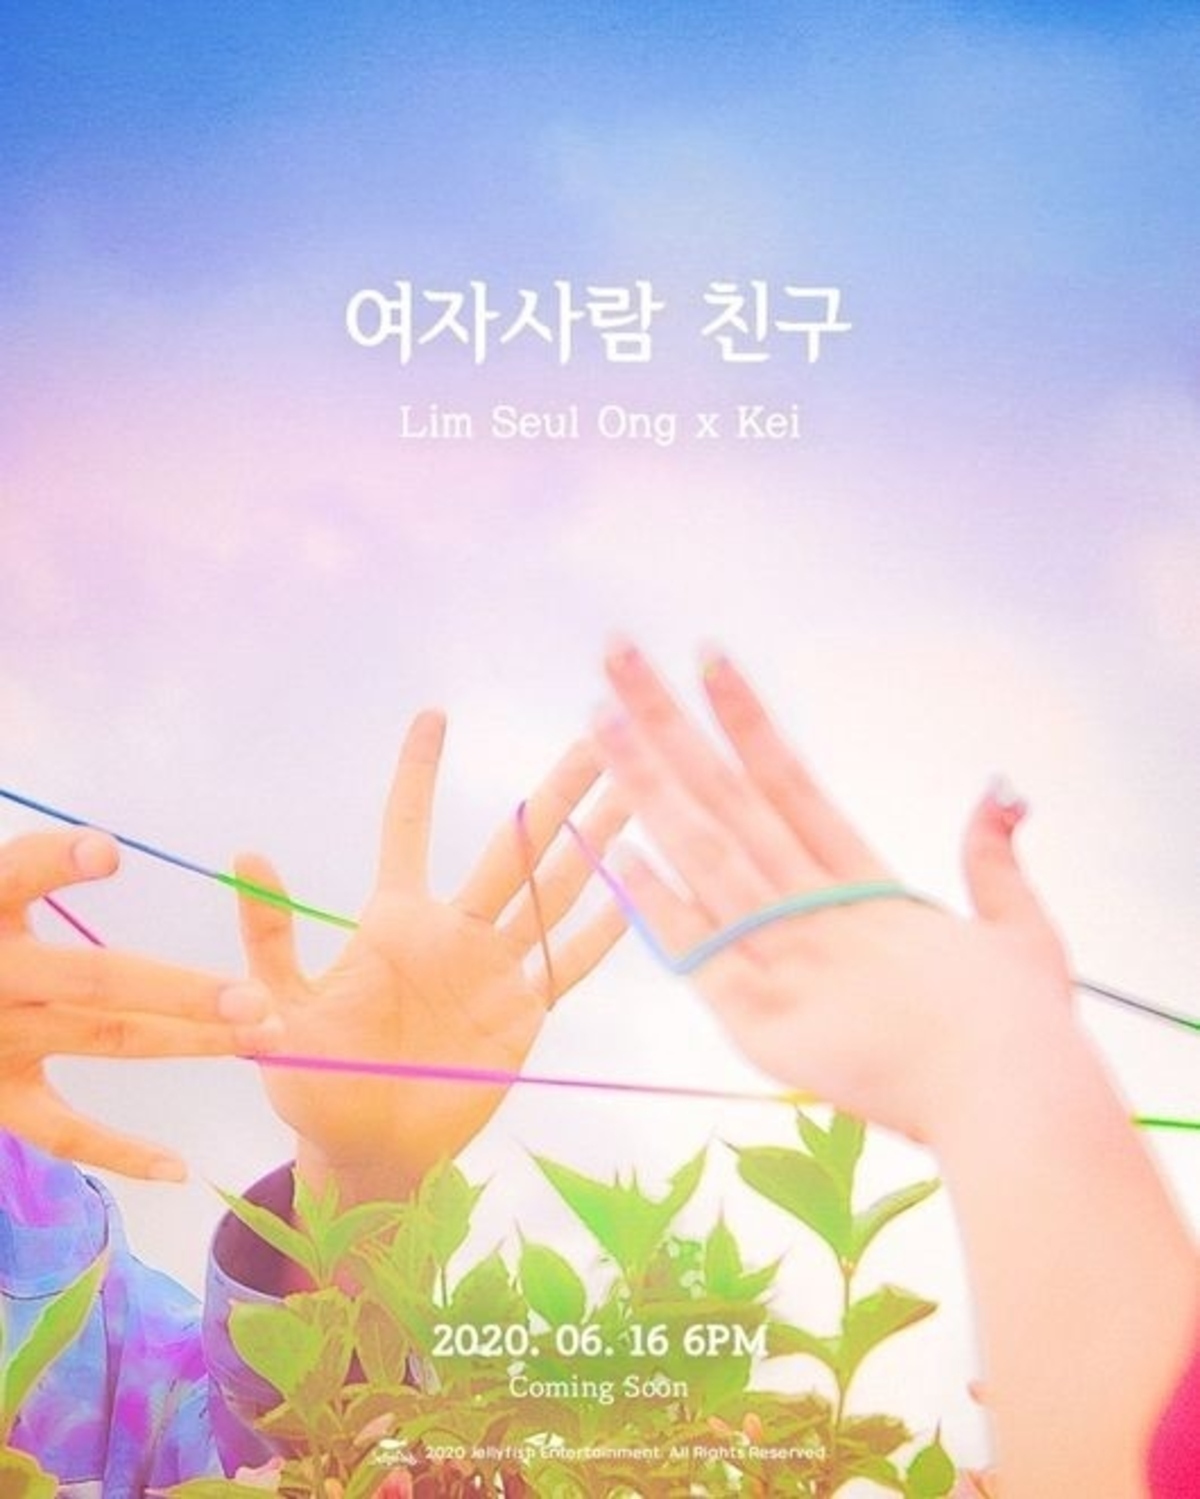 任瑟雍&金智妍合唱歌曲《女性朋友》6月16日发售 预告海报公开